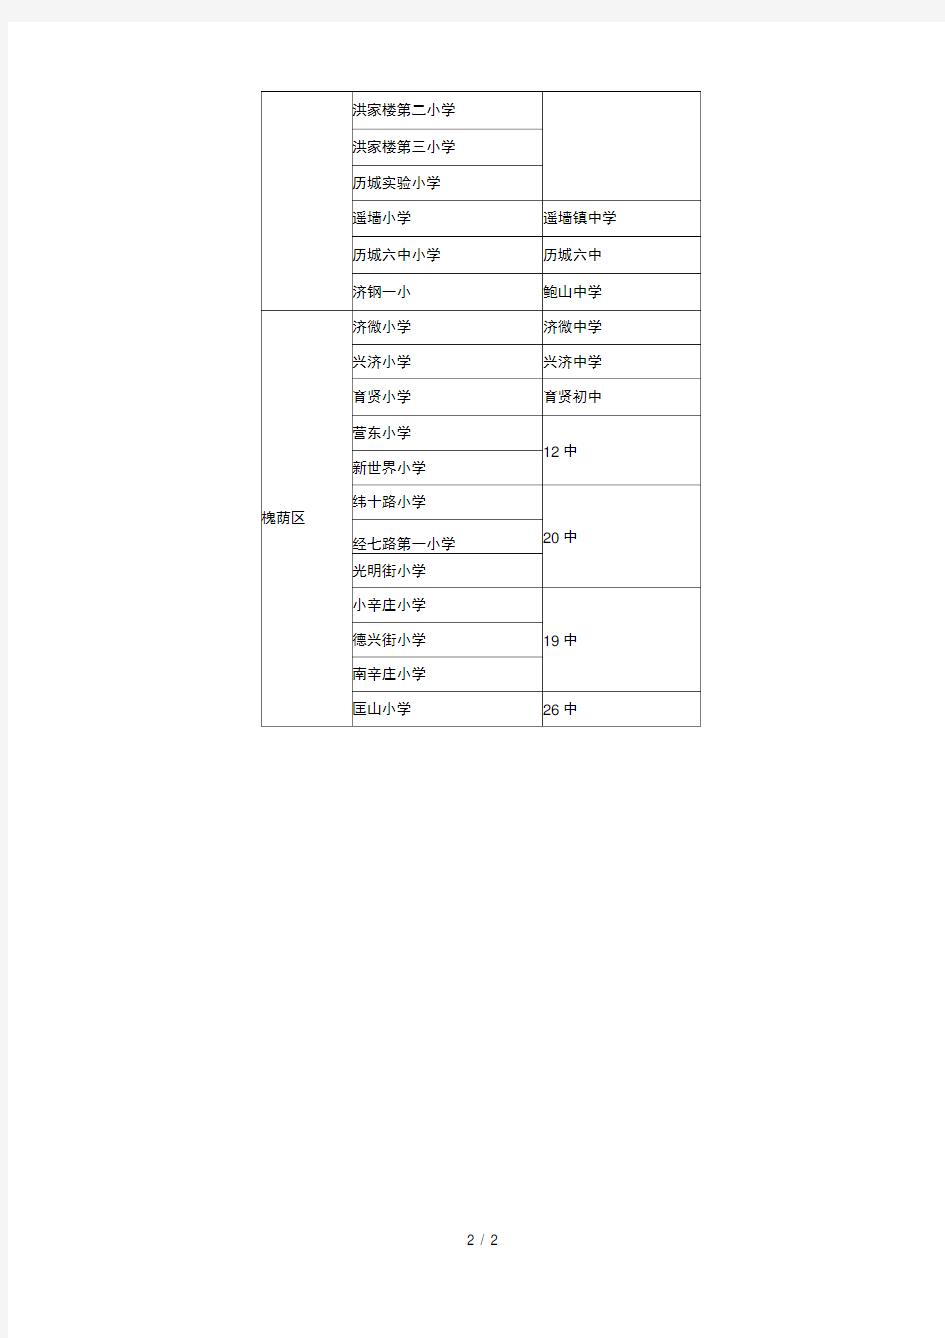 济南市小学升初中对口学校一览表